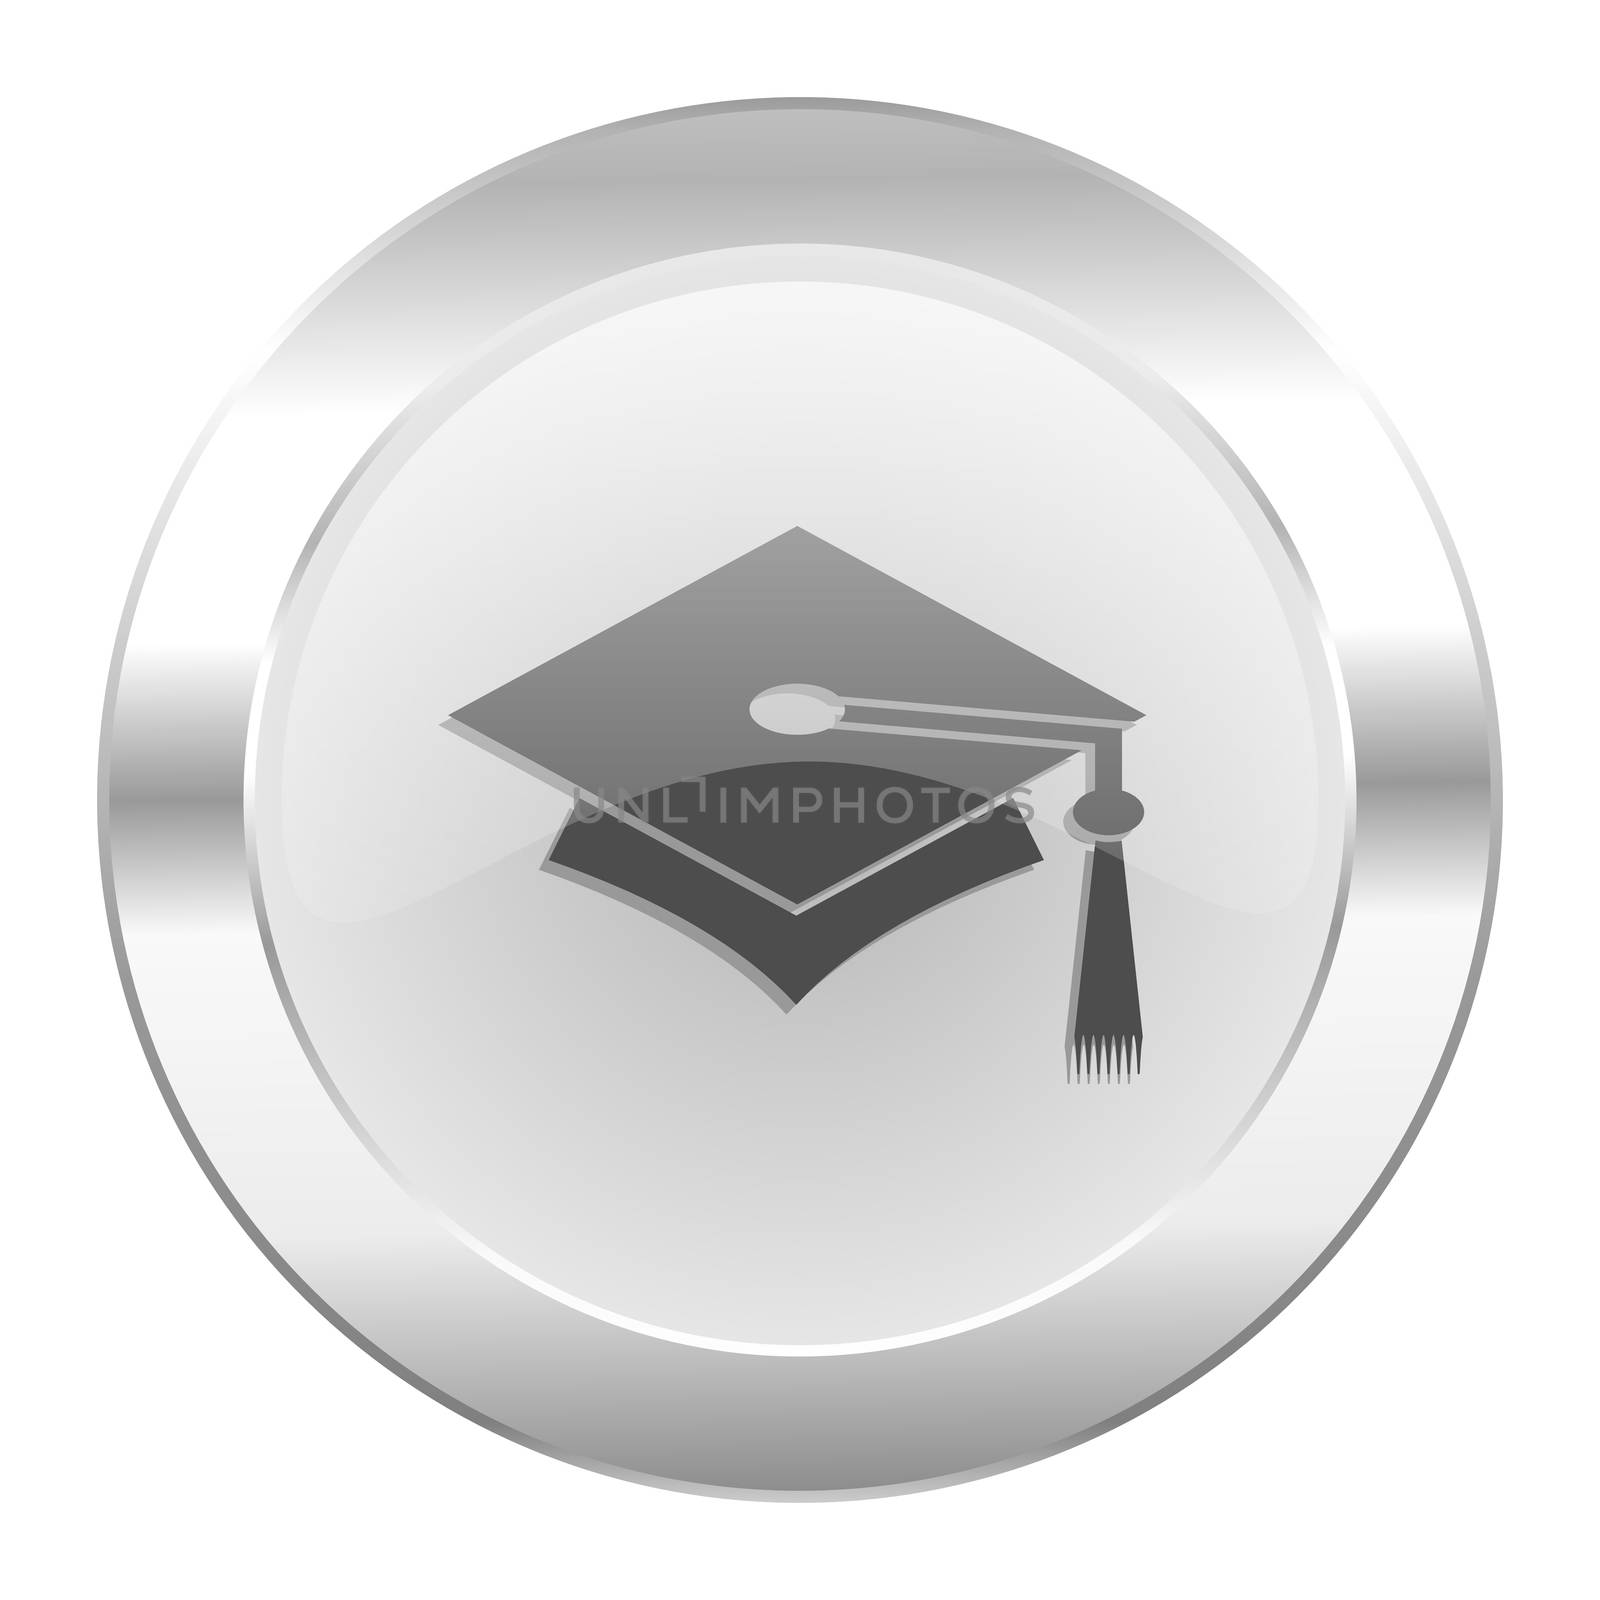 education chrome web icon isolated